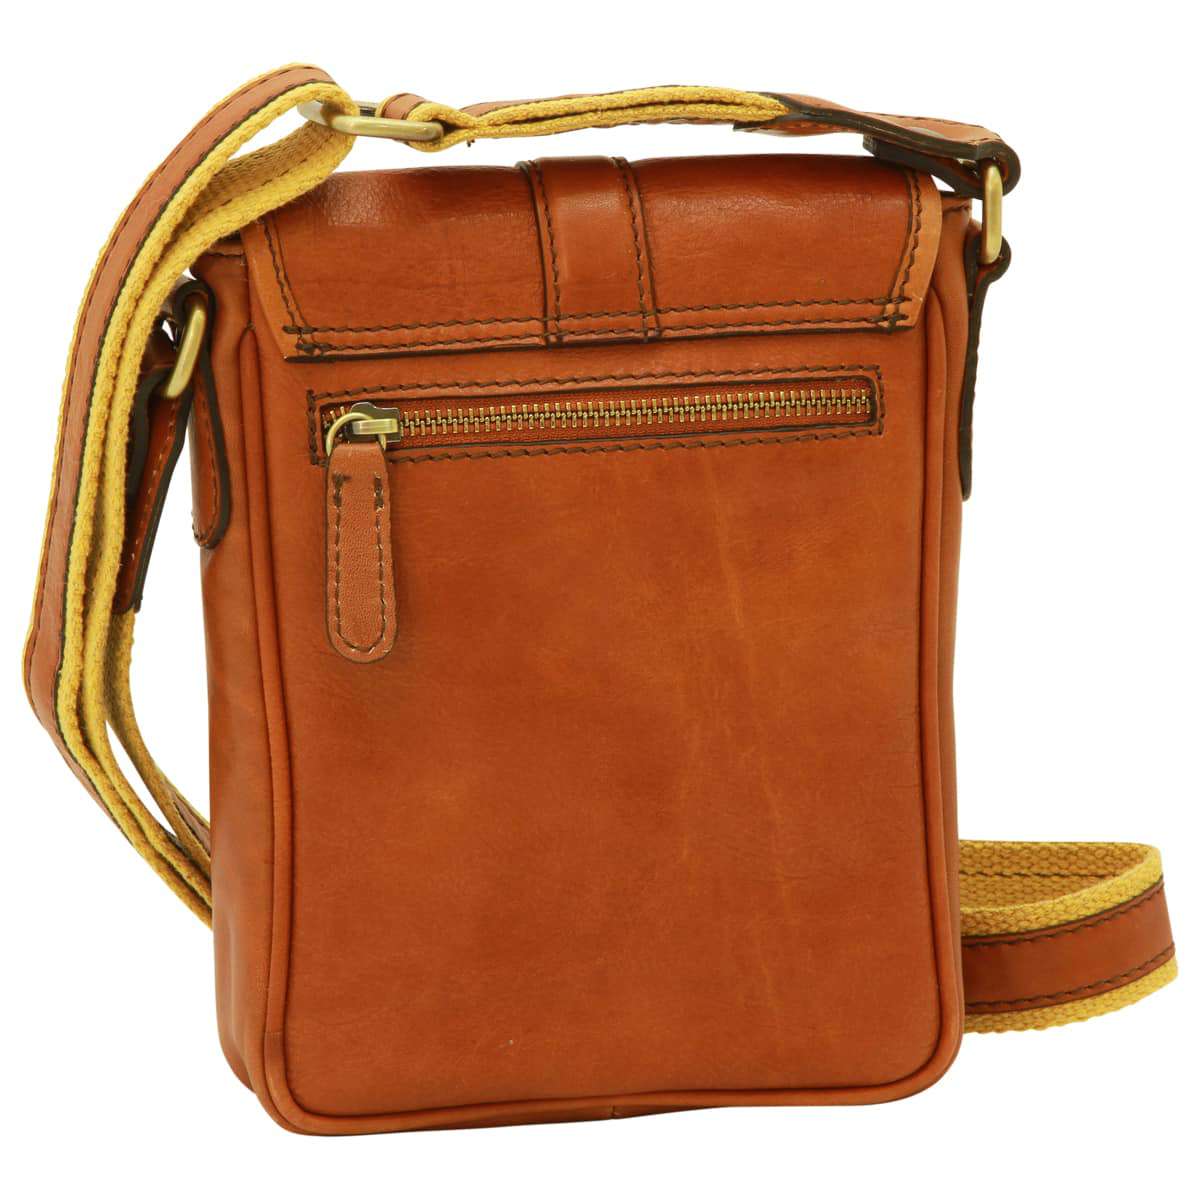 Soft Calfskin Leather Satchel Bag - Gold | 031191CO US | Old Angler Firenze